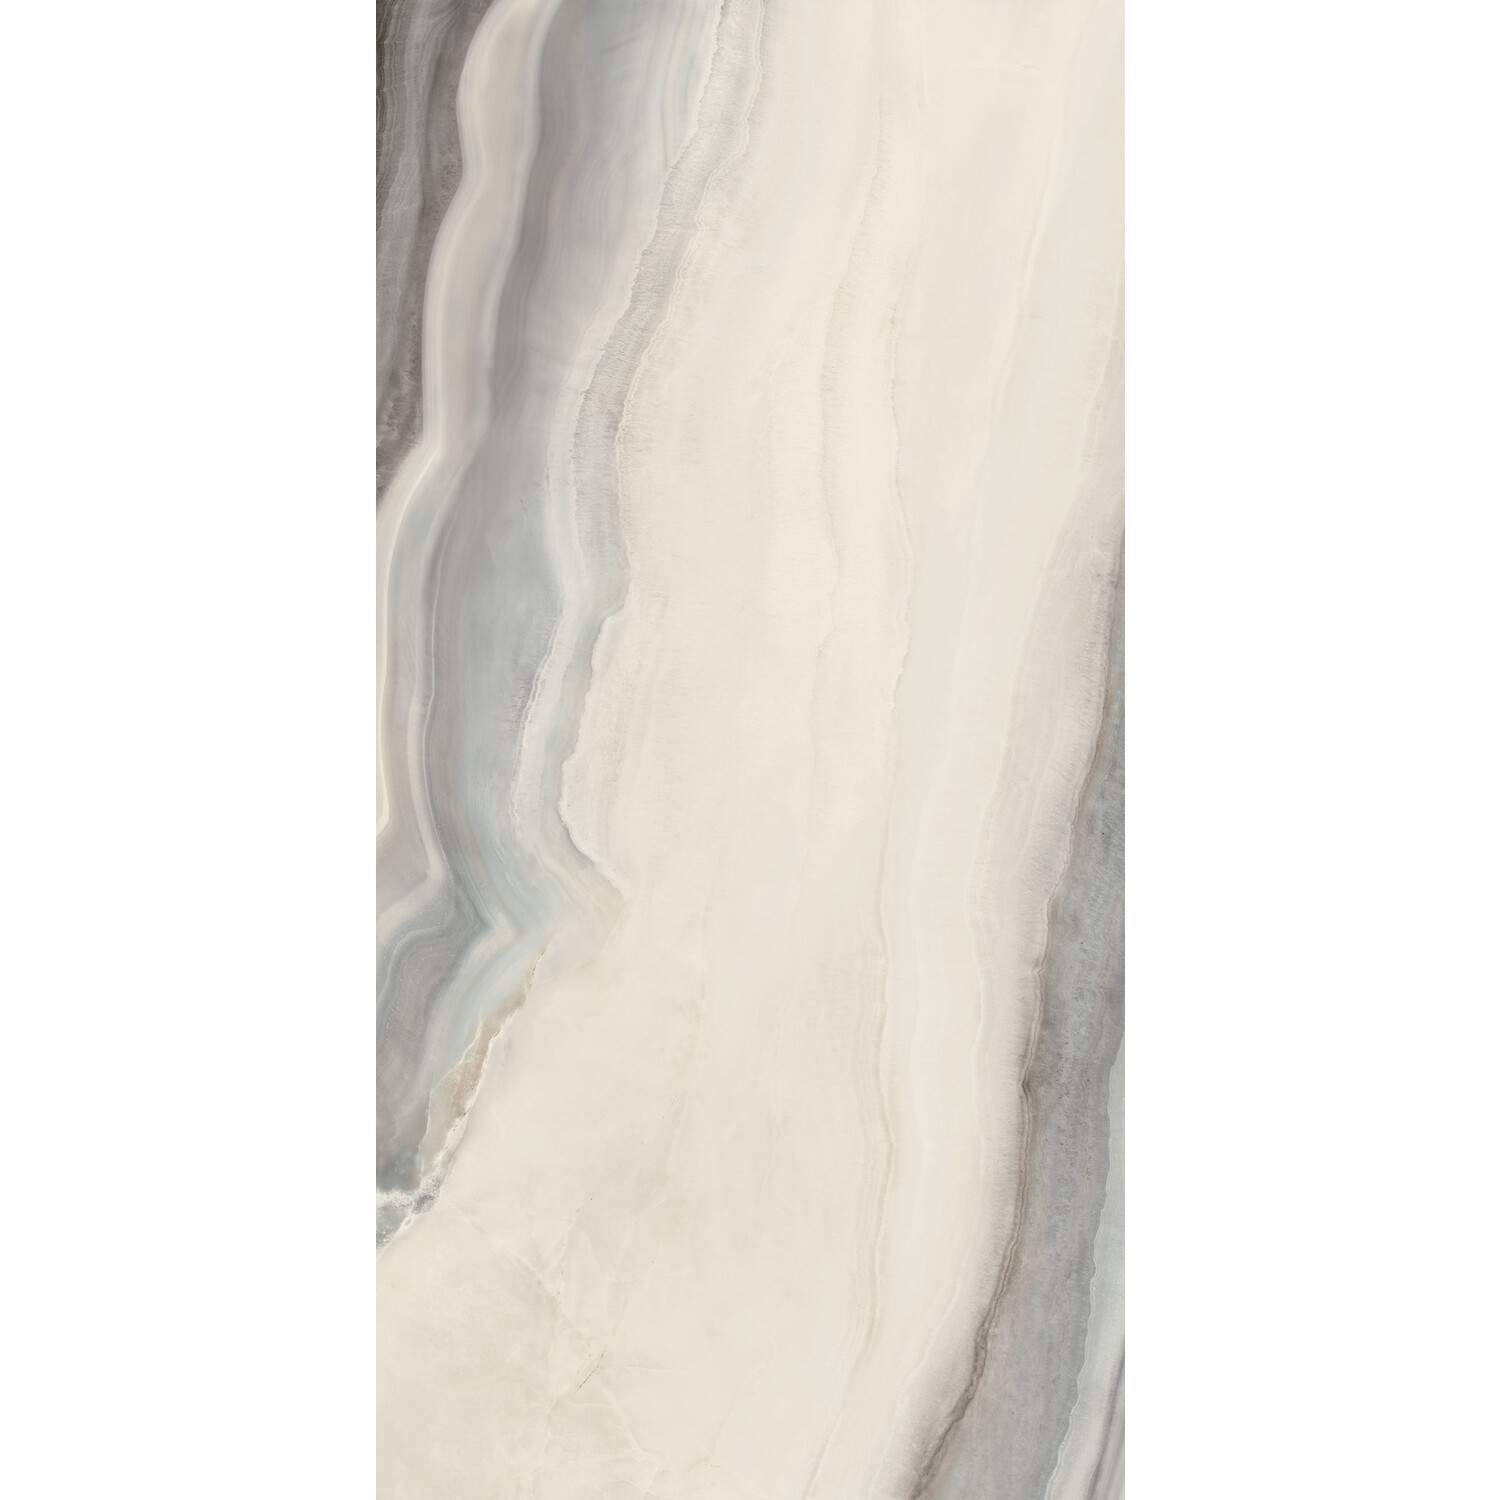 Vloer- en wandtegel  marmerlook White Opal POL 240 x 120 cm